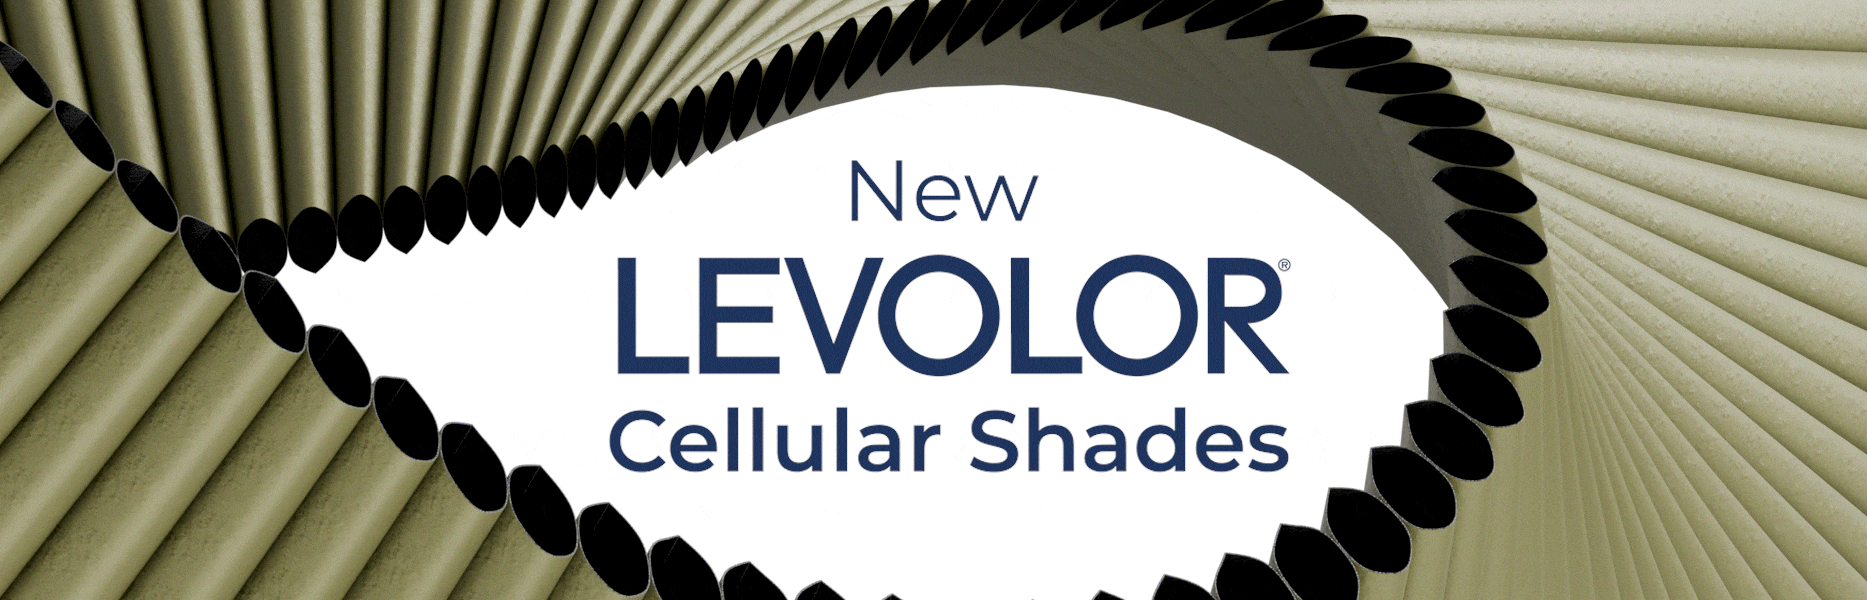 New LEVOLOR Cellular Shades